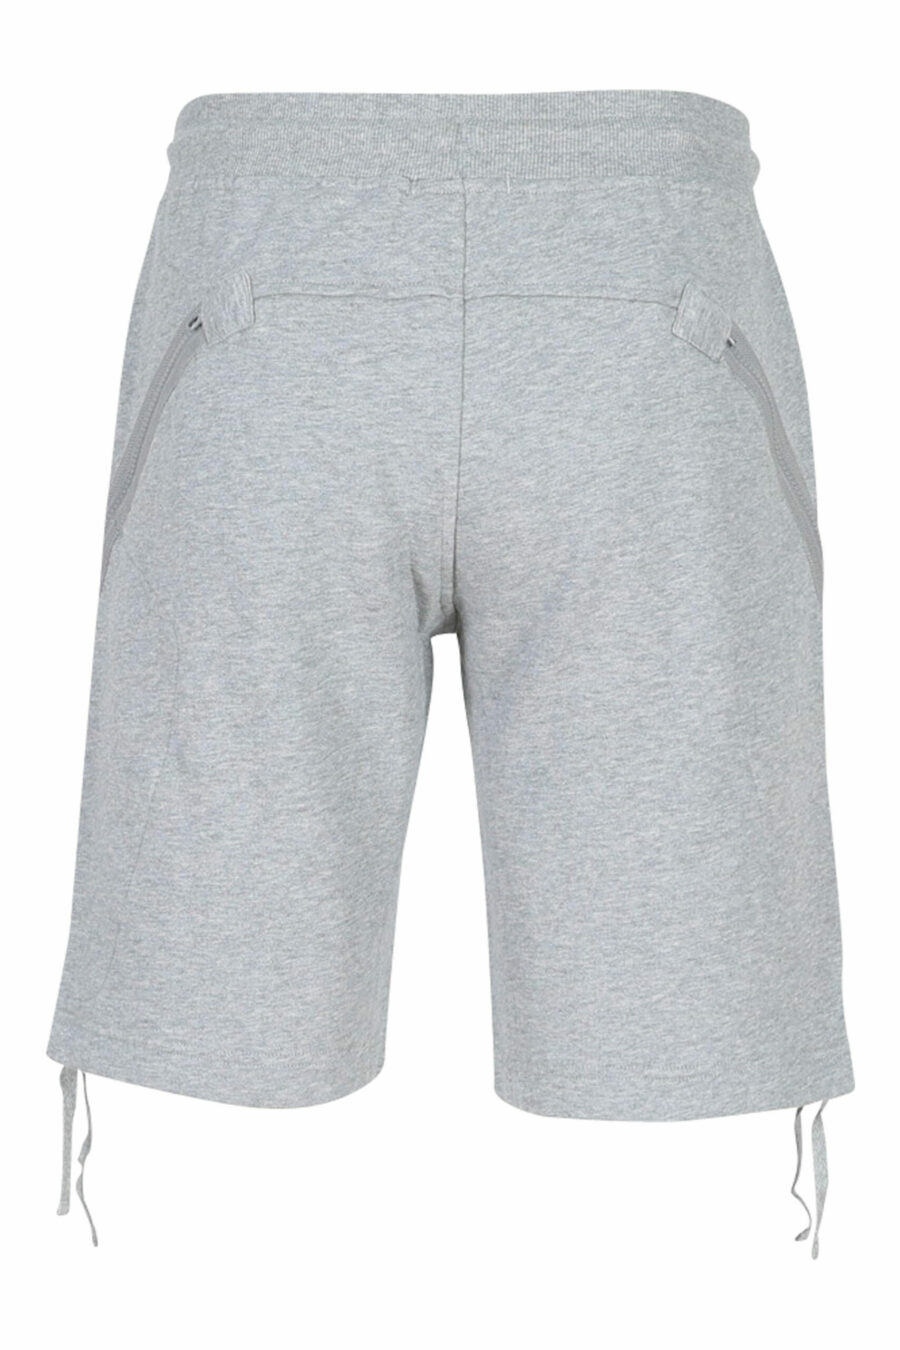 Pantalón corto gris estilo cargo - 7620943626070 2 scaled